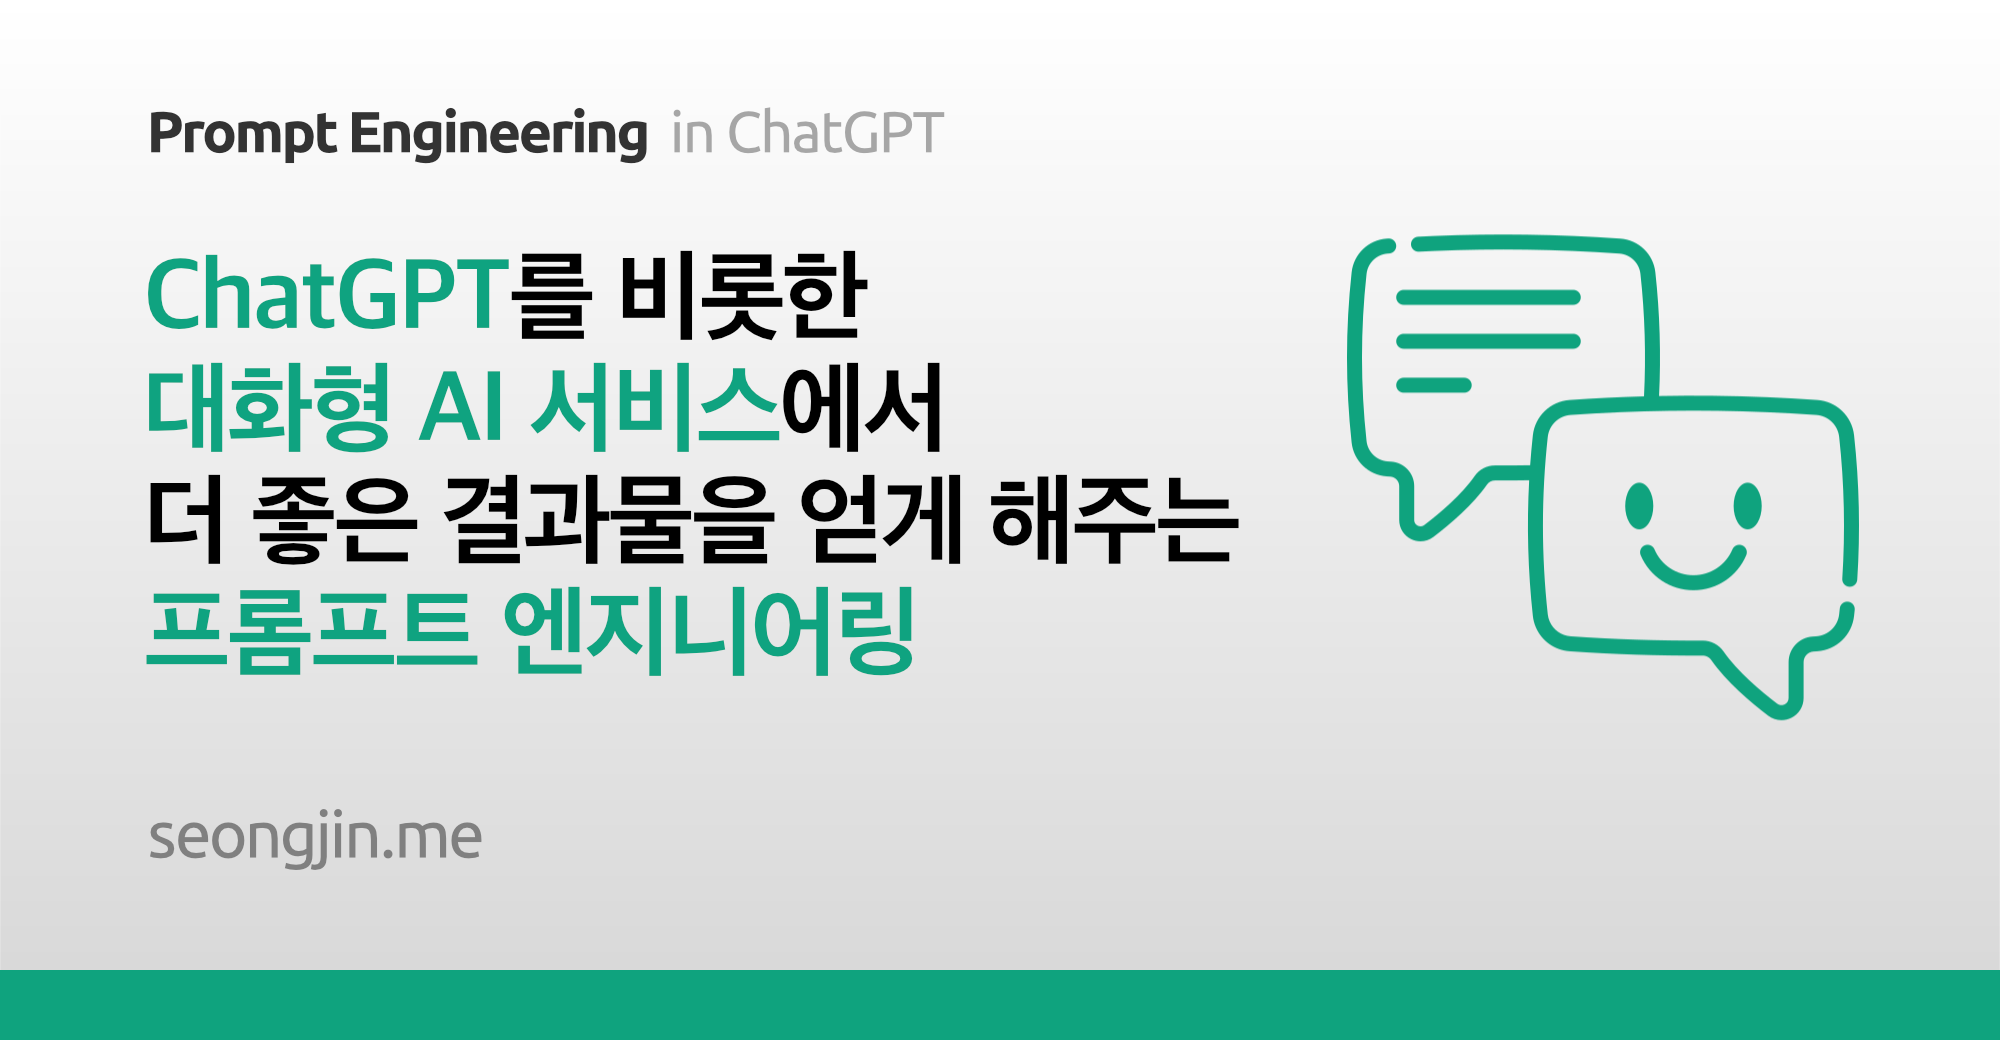 ChatGPT를 비롯한 대화형 AI 서비스에서 더 좋은 결과물을 얻게 해주는 프롬프트 엔지니어링 (Prompt Engineering)